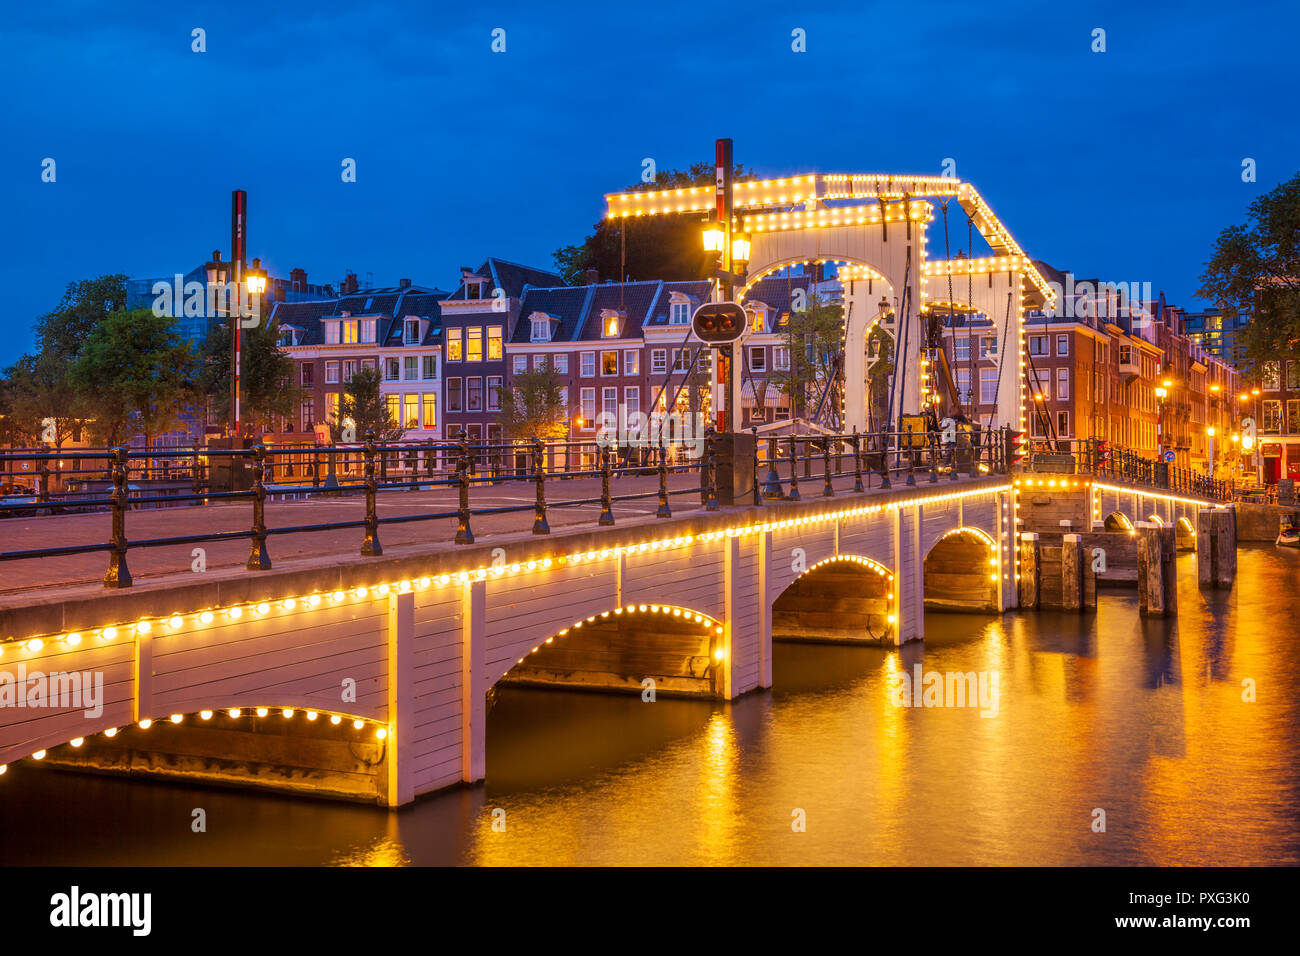 Amsterdam Magere brug Amsterdam Skinny Bridge Amsterdam di notte un ponte levatoio doppio che attraversa il fiume Amstel Amsterdam Olanda Olanda Europa UE Foto Stock